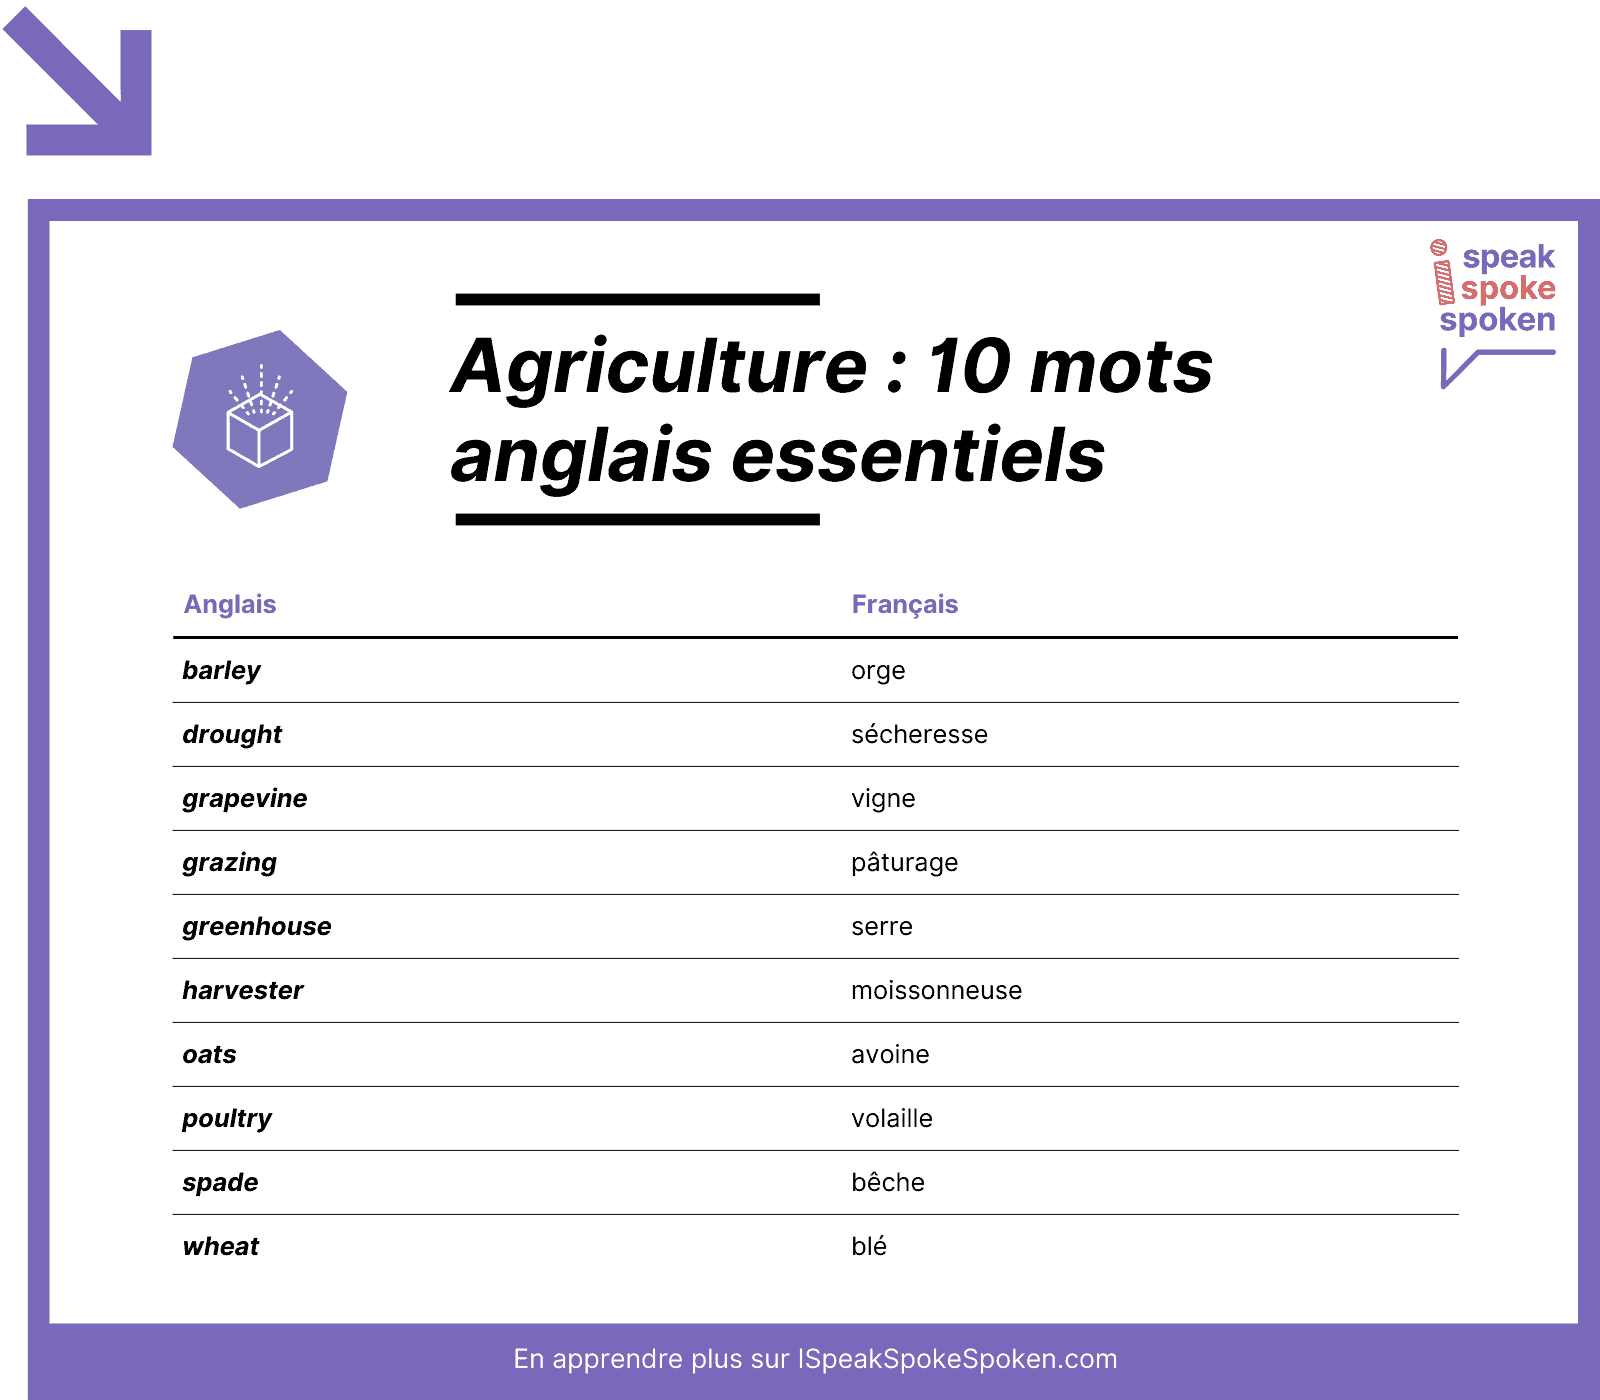 10 mots de vocabulaire anglais essentiels liés à l’agriculture